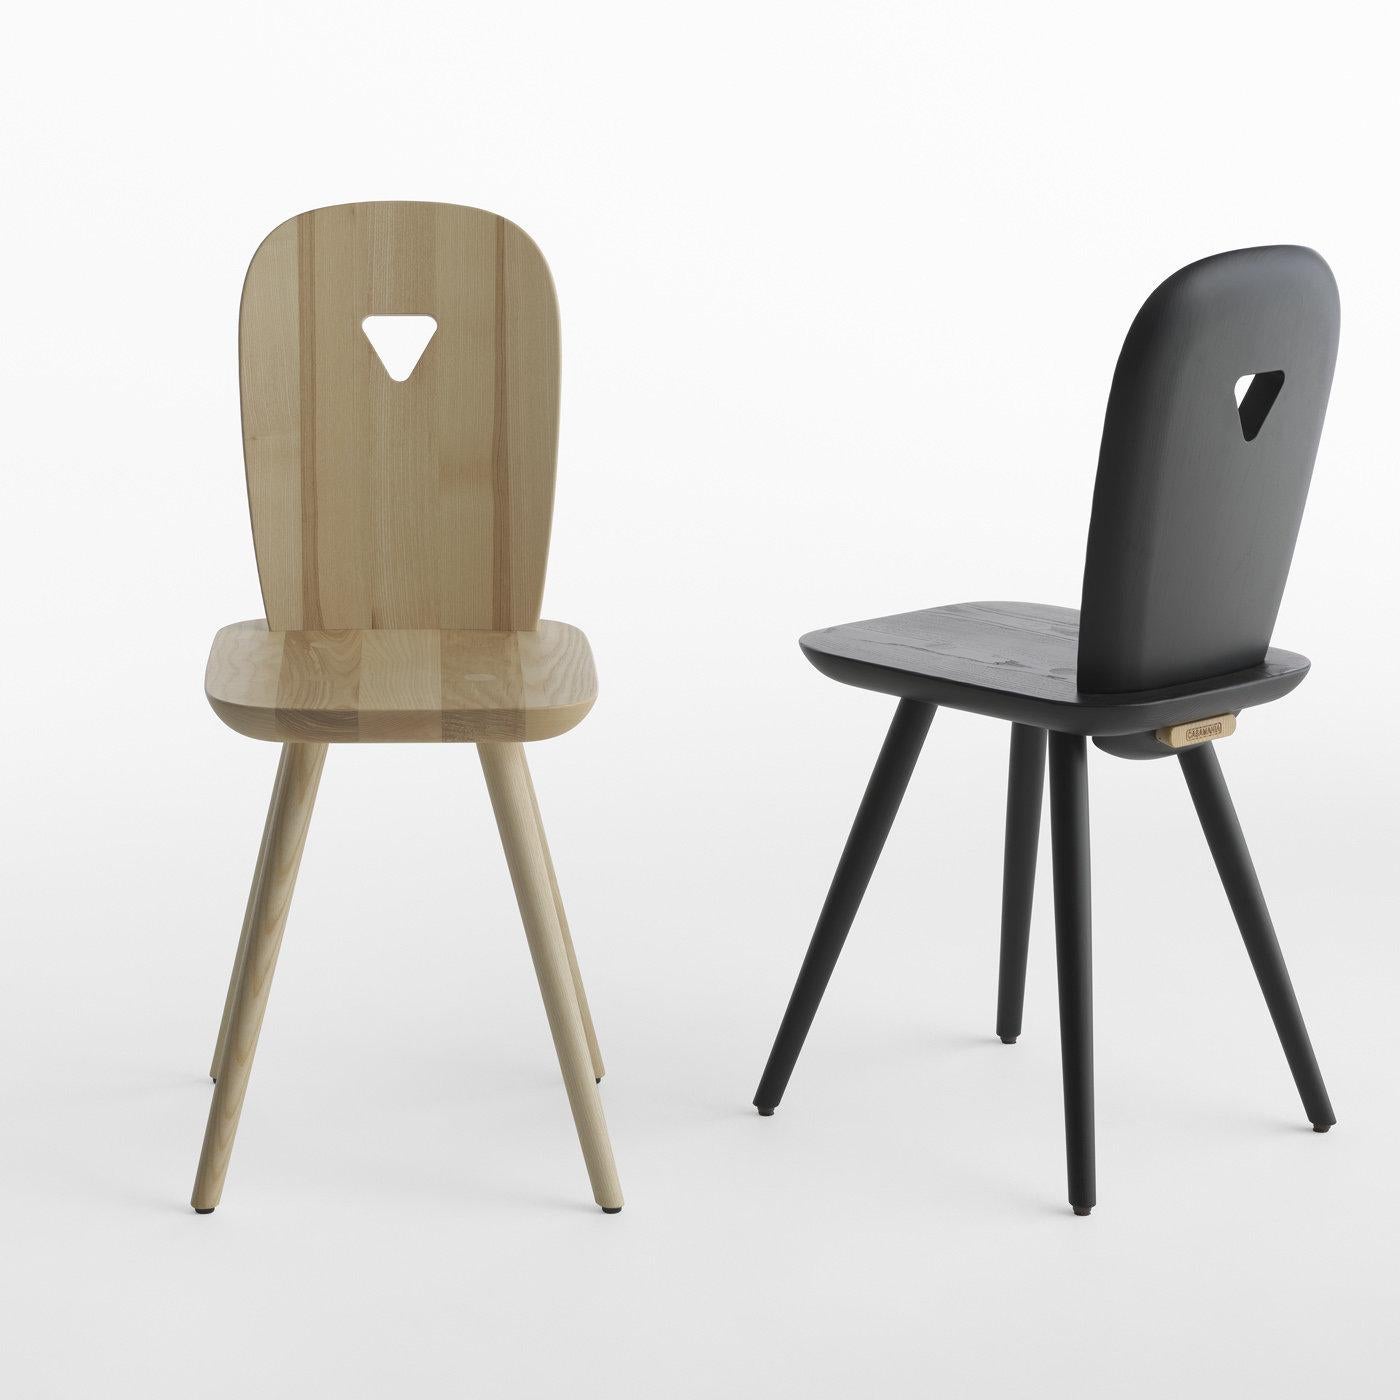 Italian La-Dina Set of 2 Ashwood Chairs by Luca Nichetto